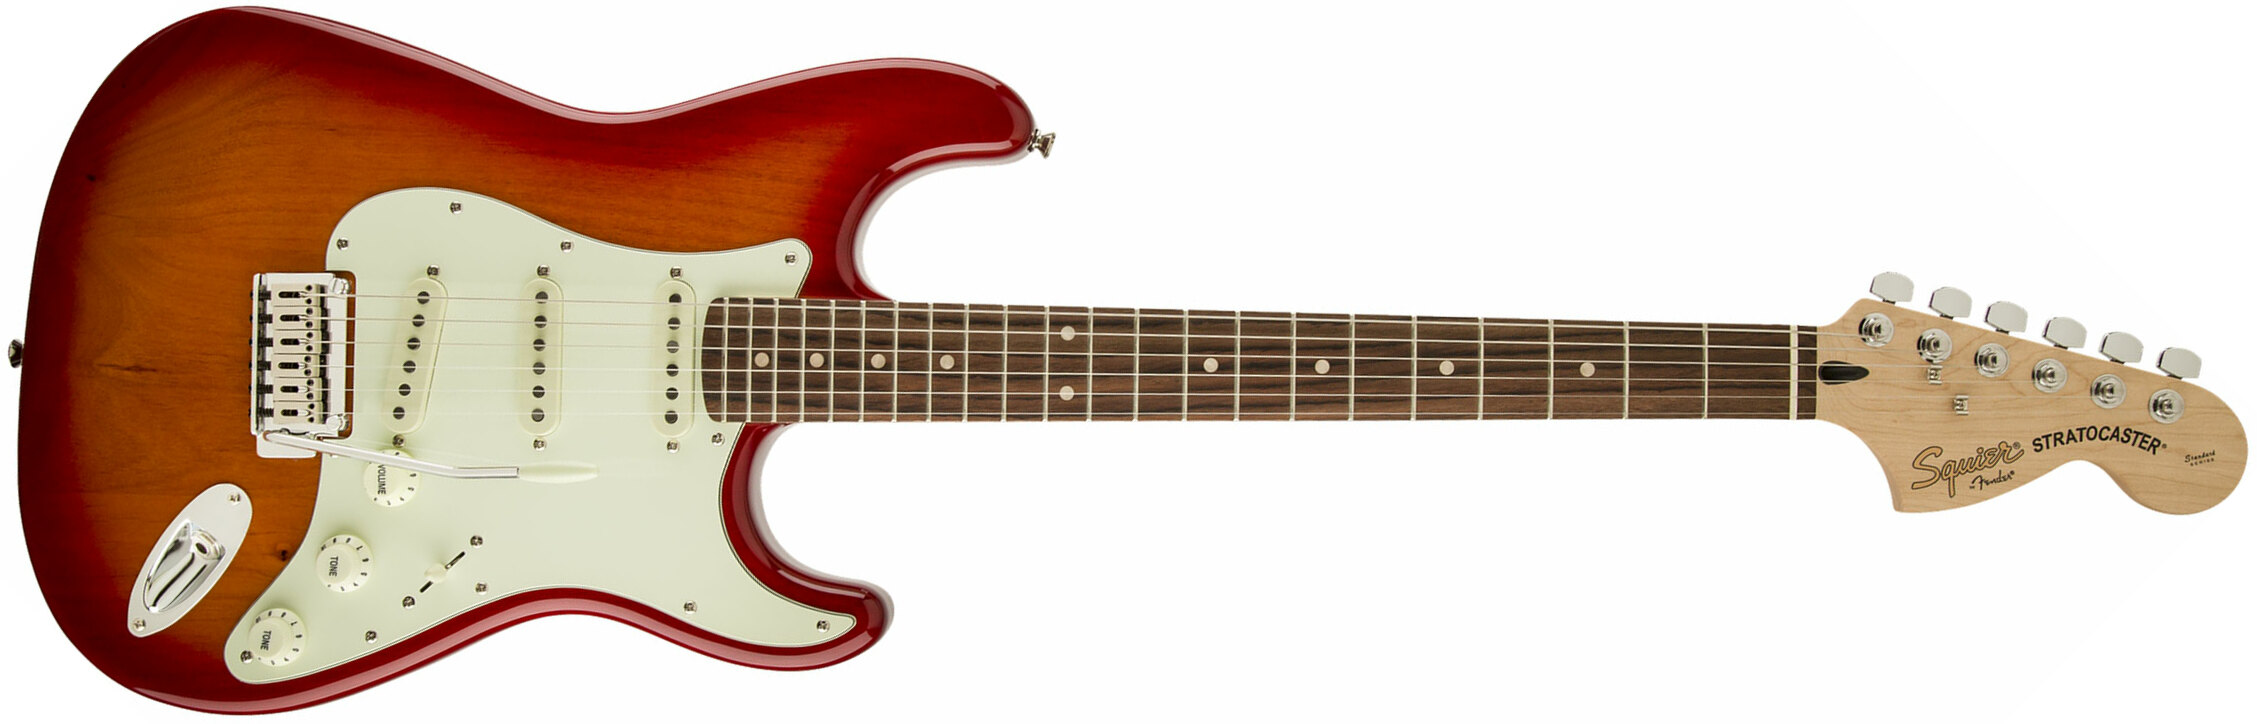 Squier Strat Standard Lau - Cherry Sunburst - Str shape electric guitar - Main picture